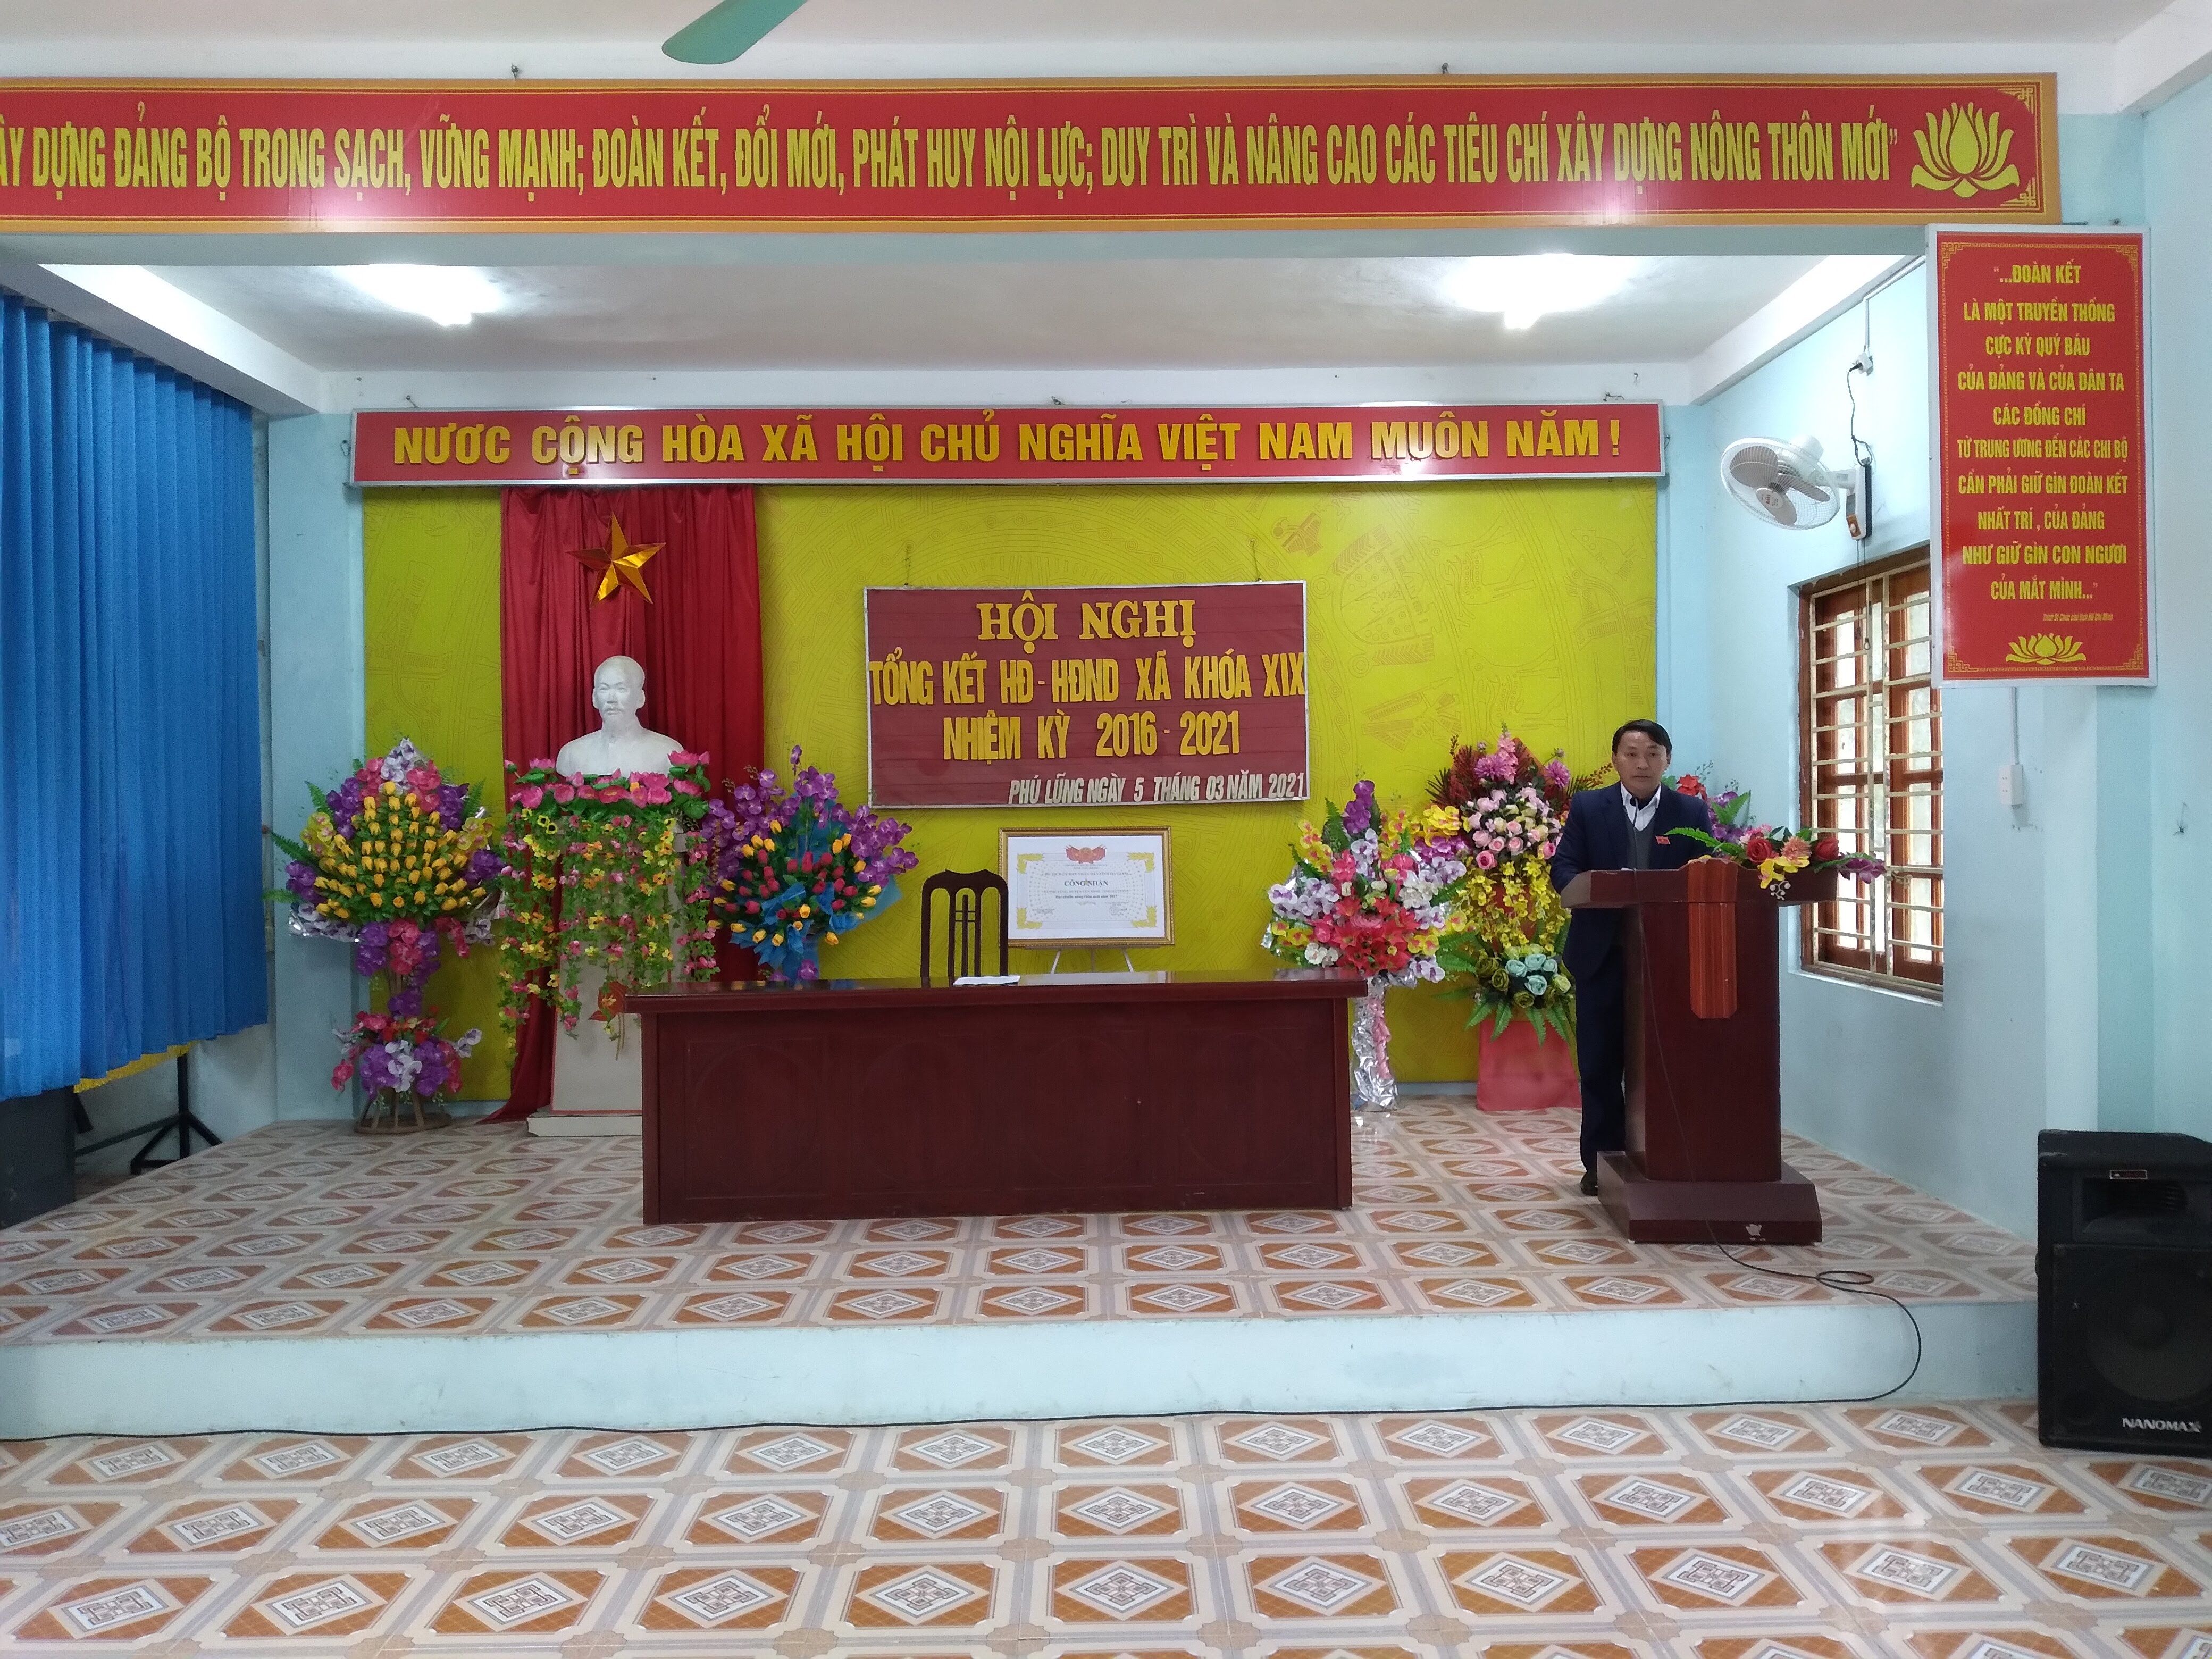 HĐND xã Phú Lũng tổng kết hoạt động nhiệm kỳ 2016 - 2021